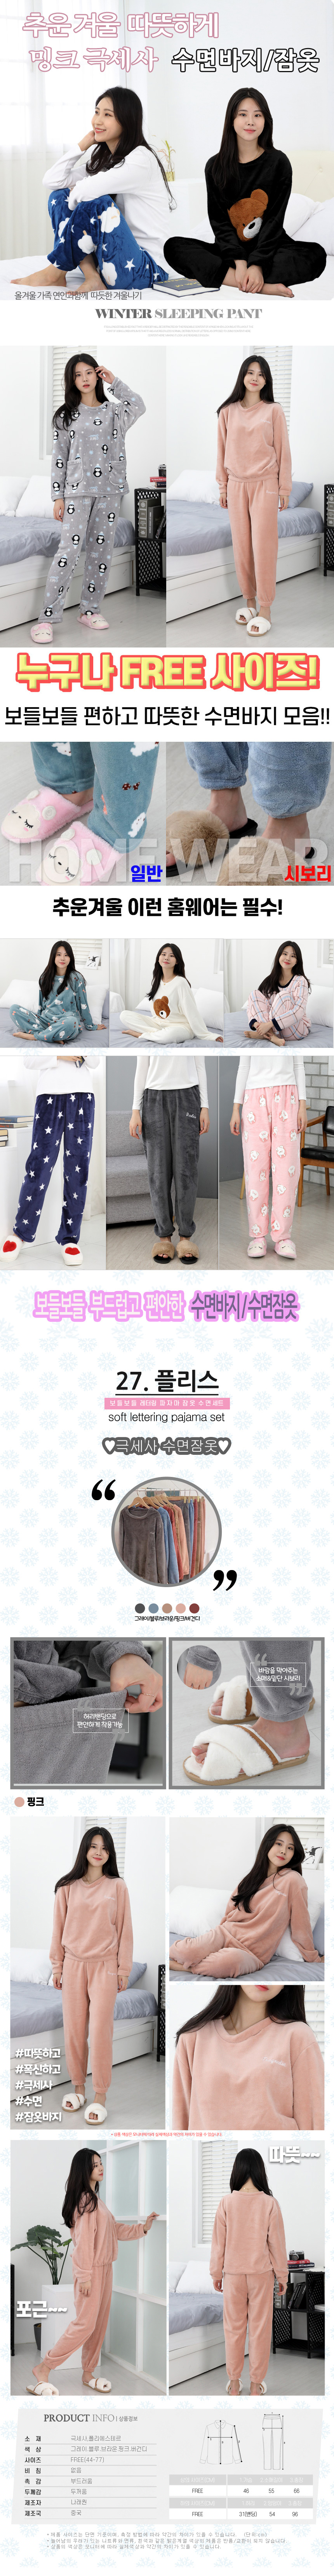 sleeping_pajamas_set_27_05.jpg